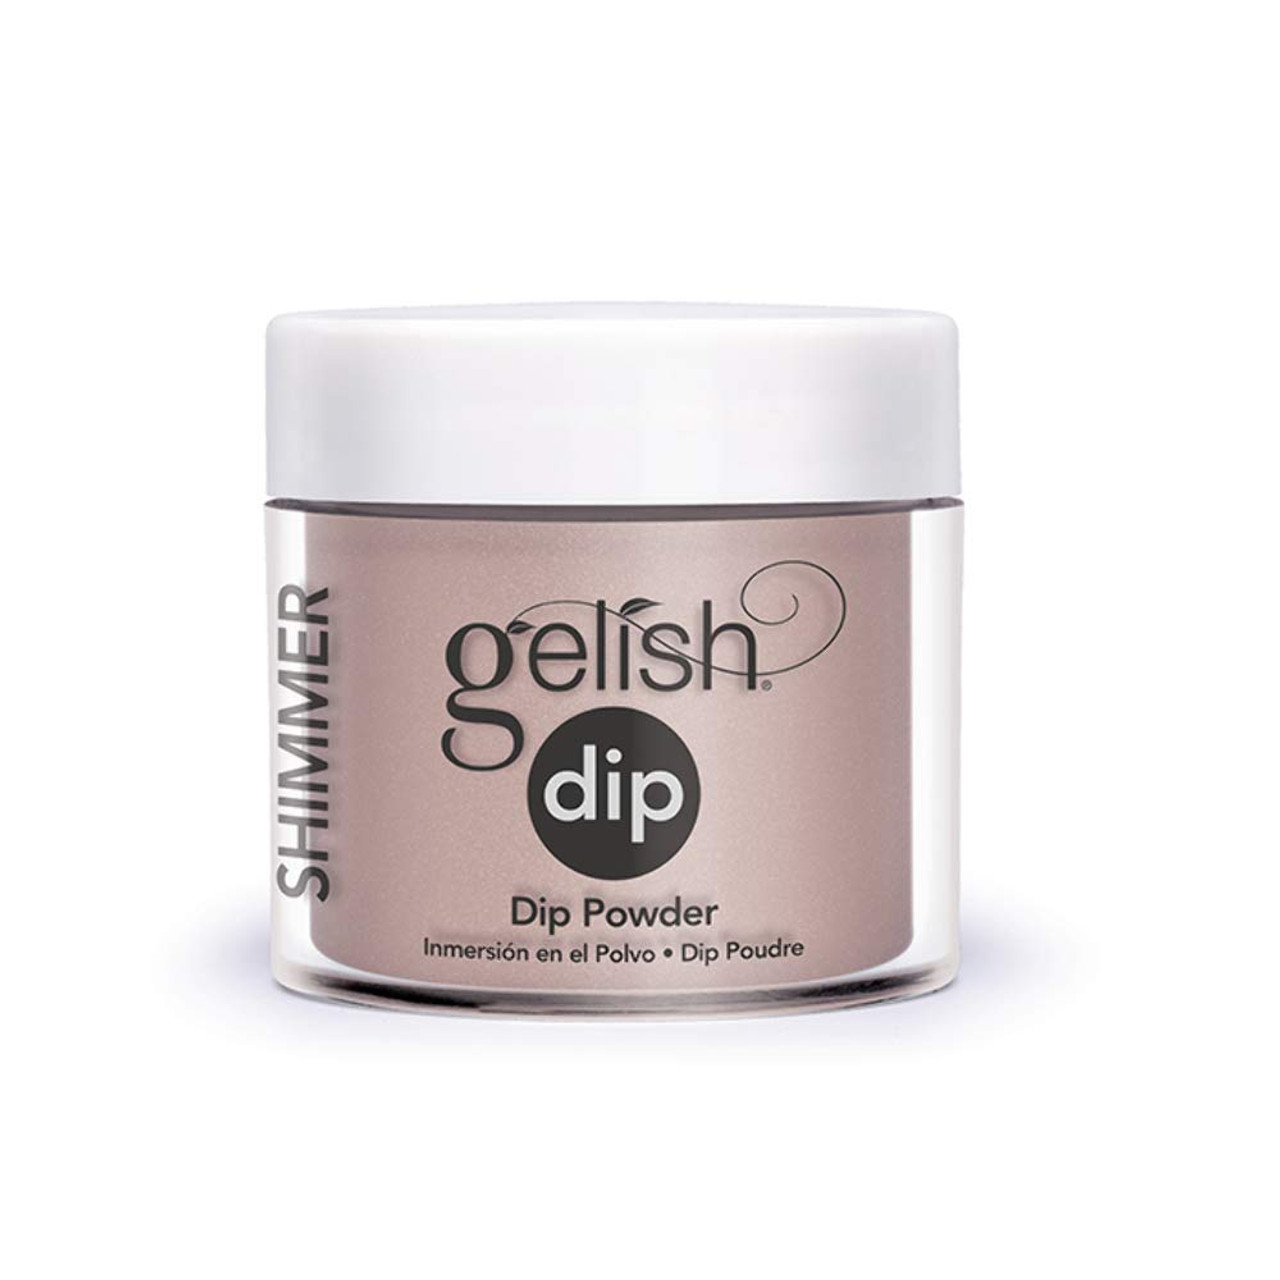 Gelish Dip Powder - 1610018 - Perfect Match